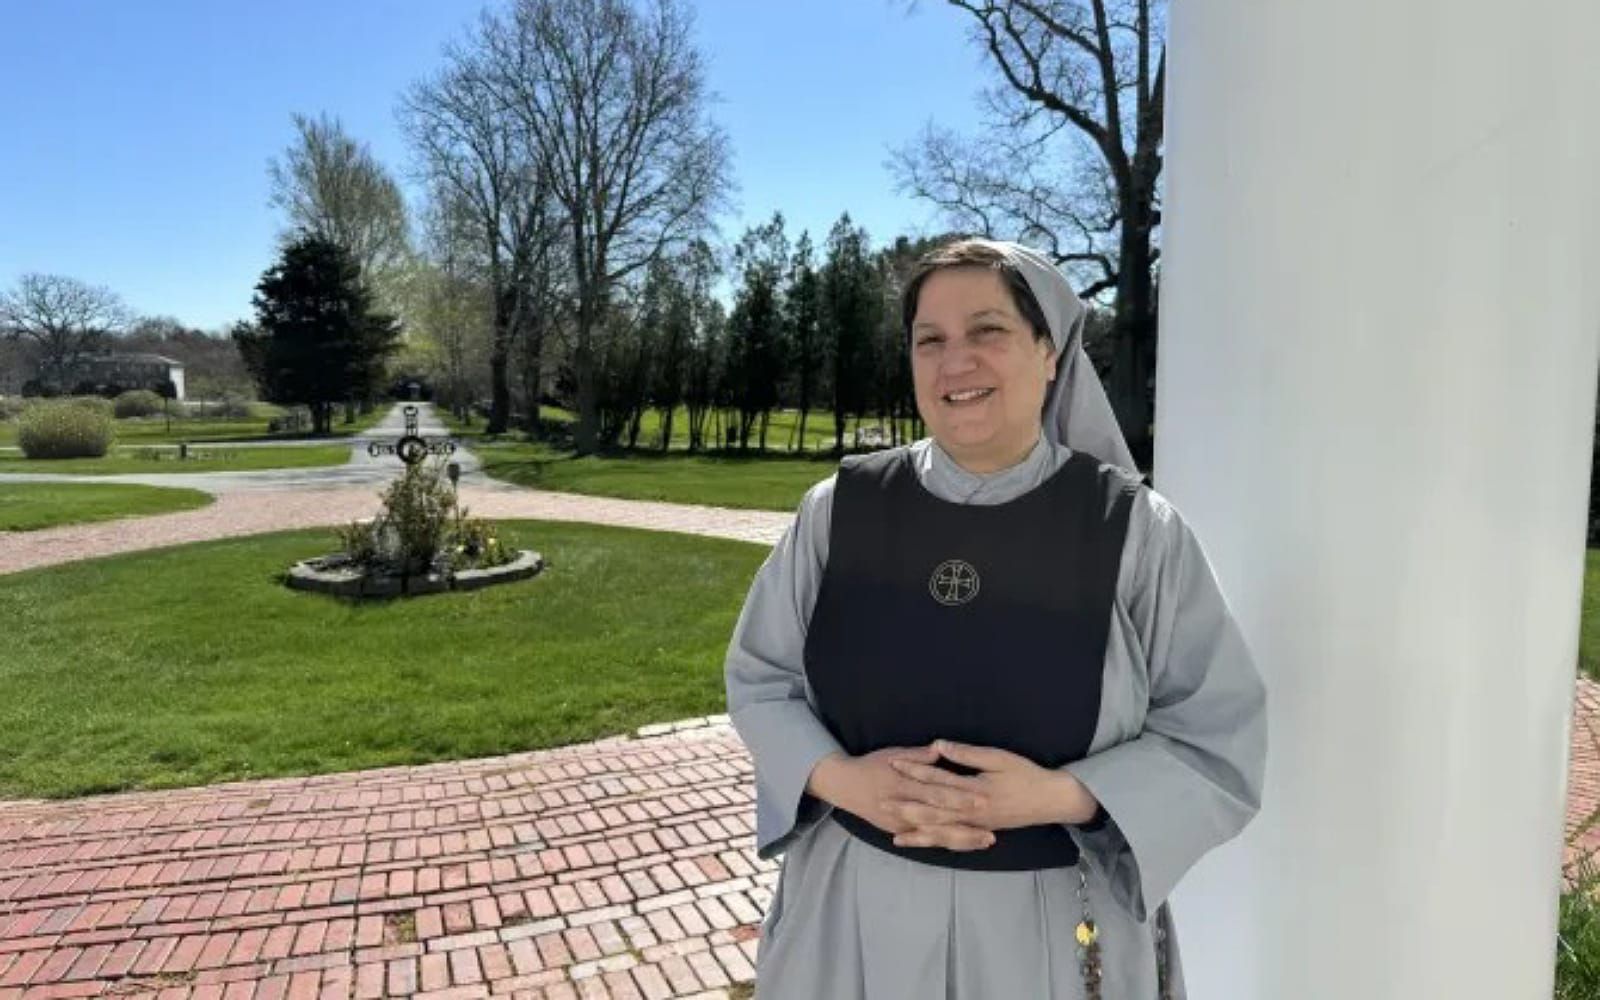  De jornalista a freira: A história da madre superiora que fundou uma congregação maronita nos EUA 